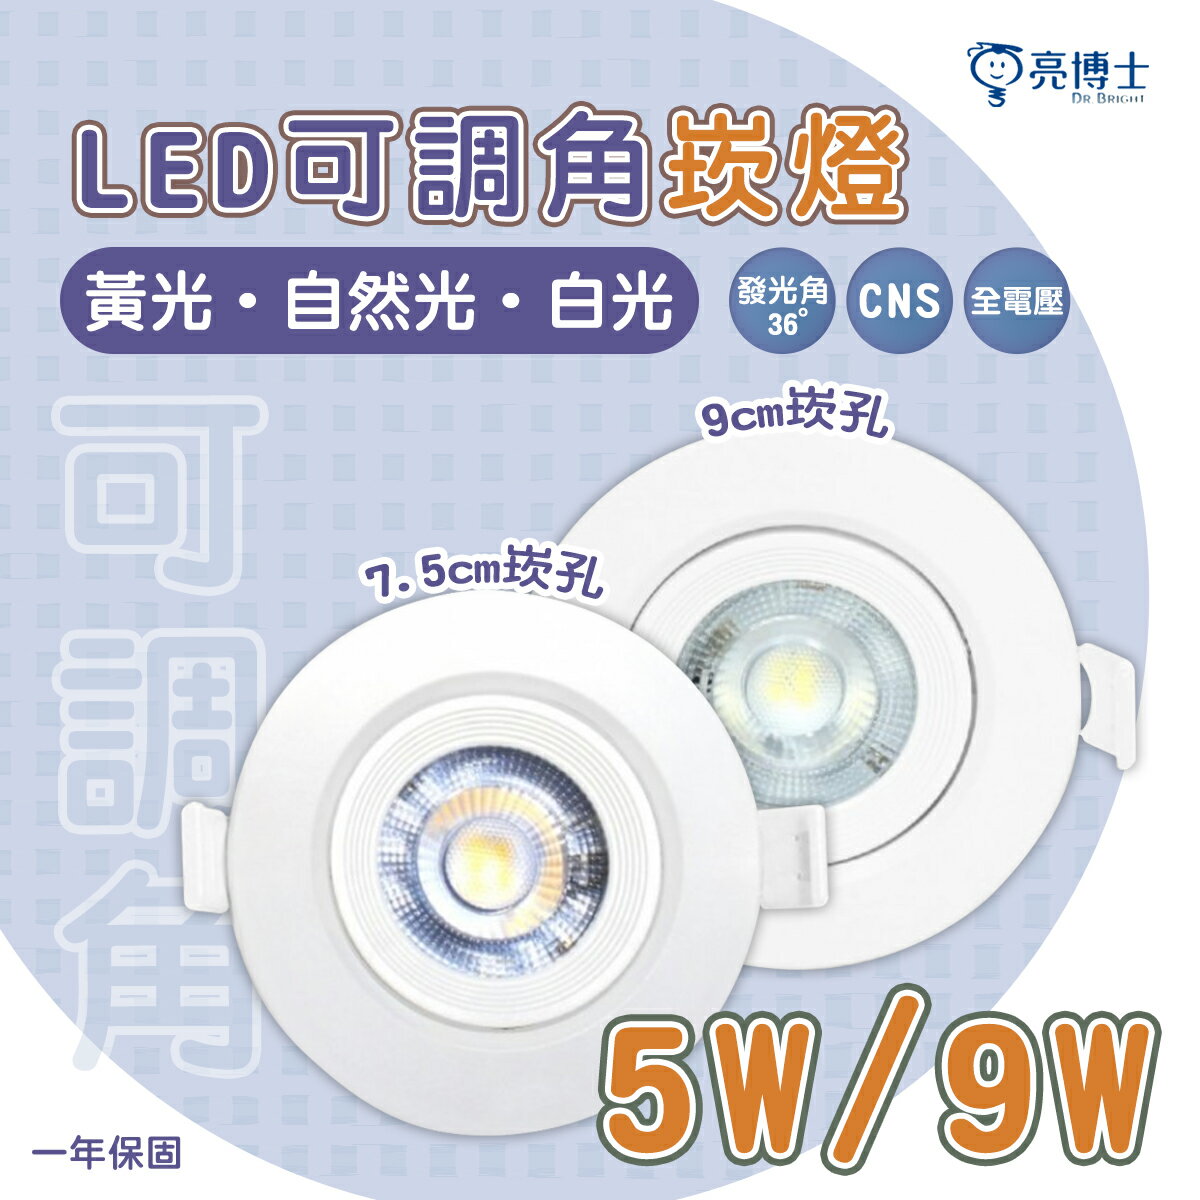 🚛亮博士 5W LED崁燈 7.5CM / 9W LED崁燈 9.5CM 可調角度 附快速接頭 全電壓〖永光照明〗DR-REC%